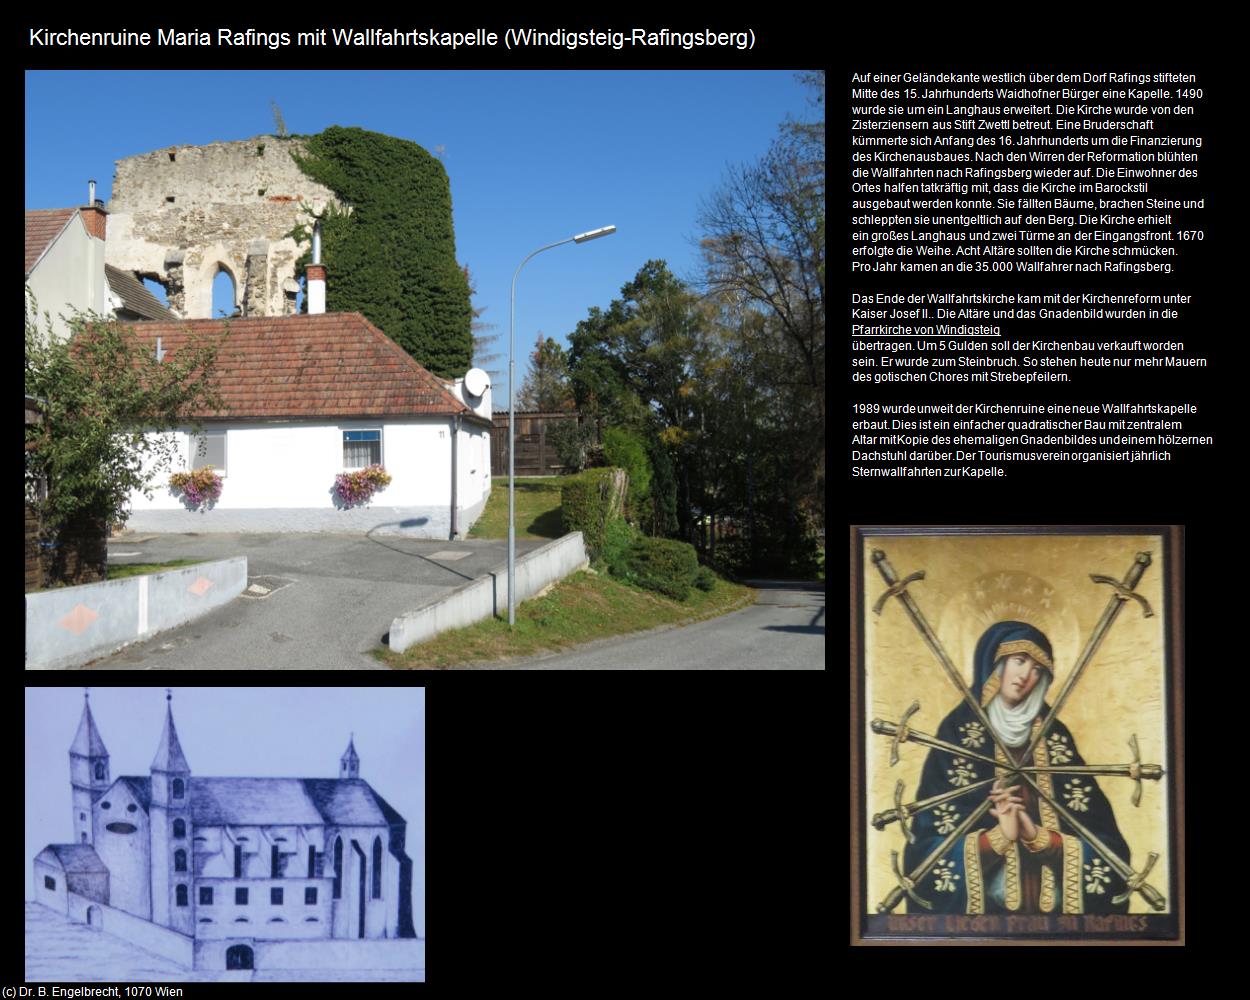 Kirchenruine Maria Rafings mit Wallfahrtskapelle (Rafingsberg) (Windigsteig) in Kulturatlas-NIEDERÖSTERREICH(c)B.Engelbrecht